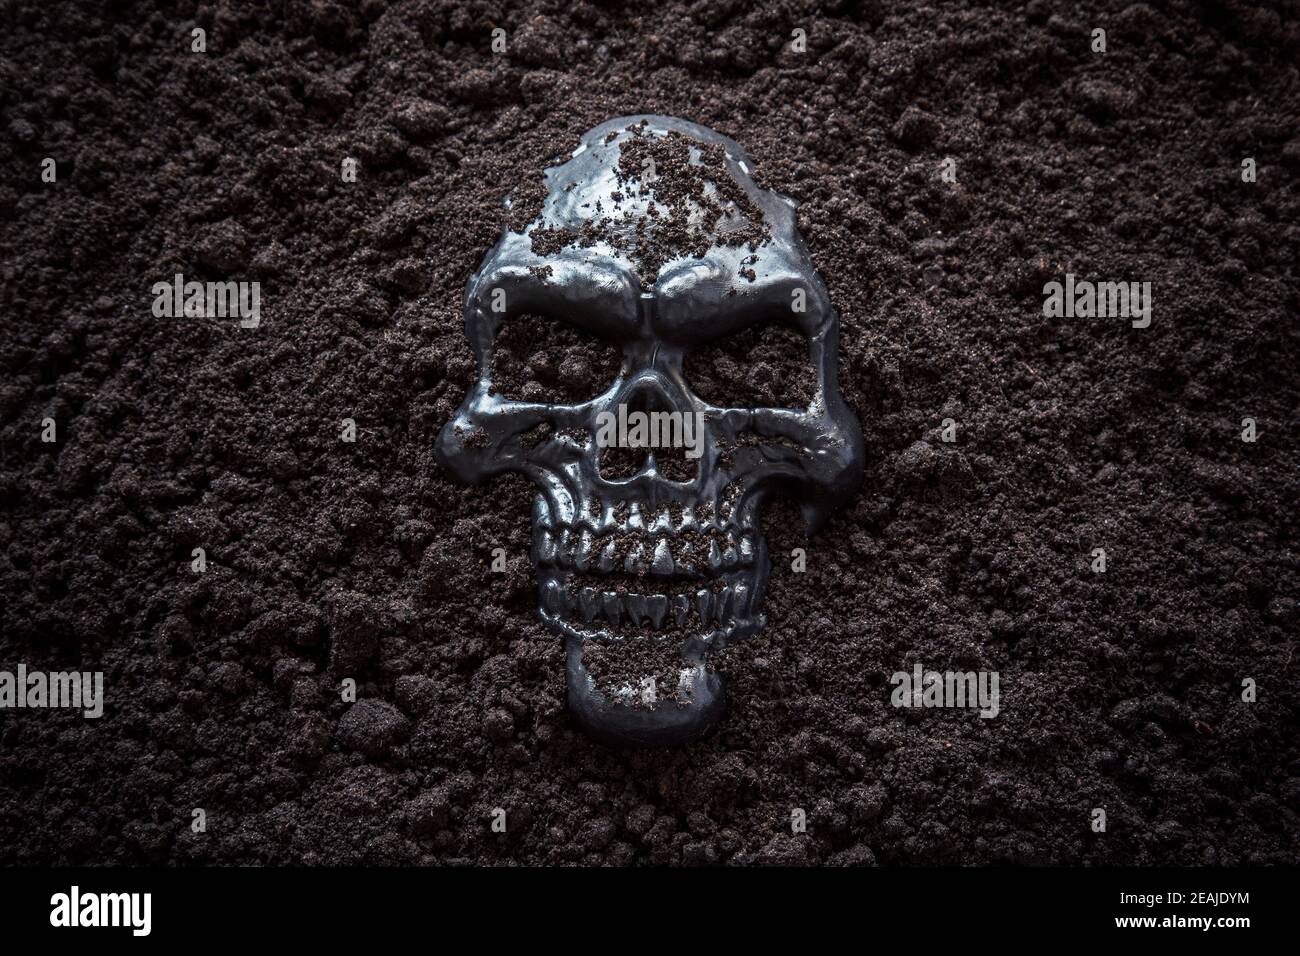 Gruseliger menschlicher Schädel in schwarzem Boden Stockfoto